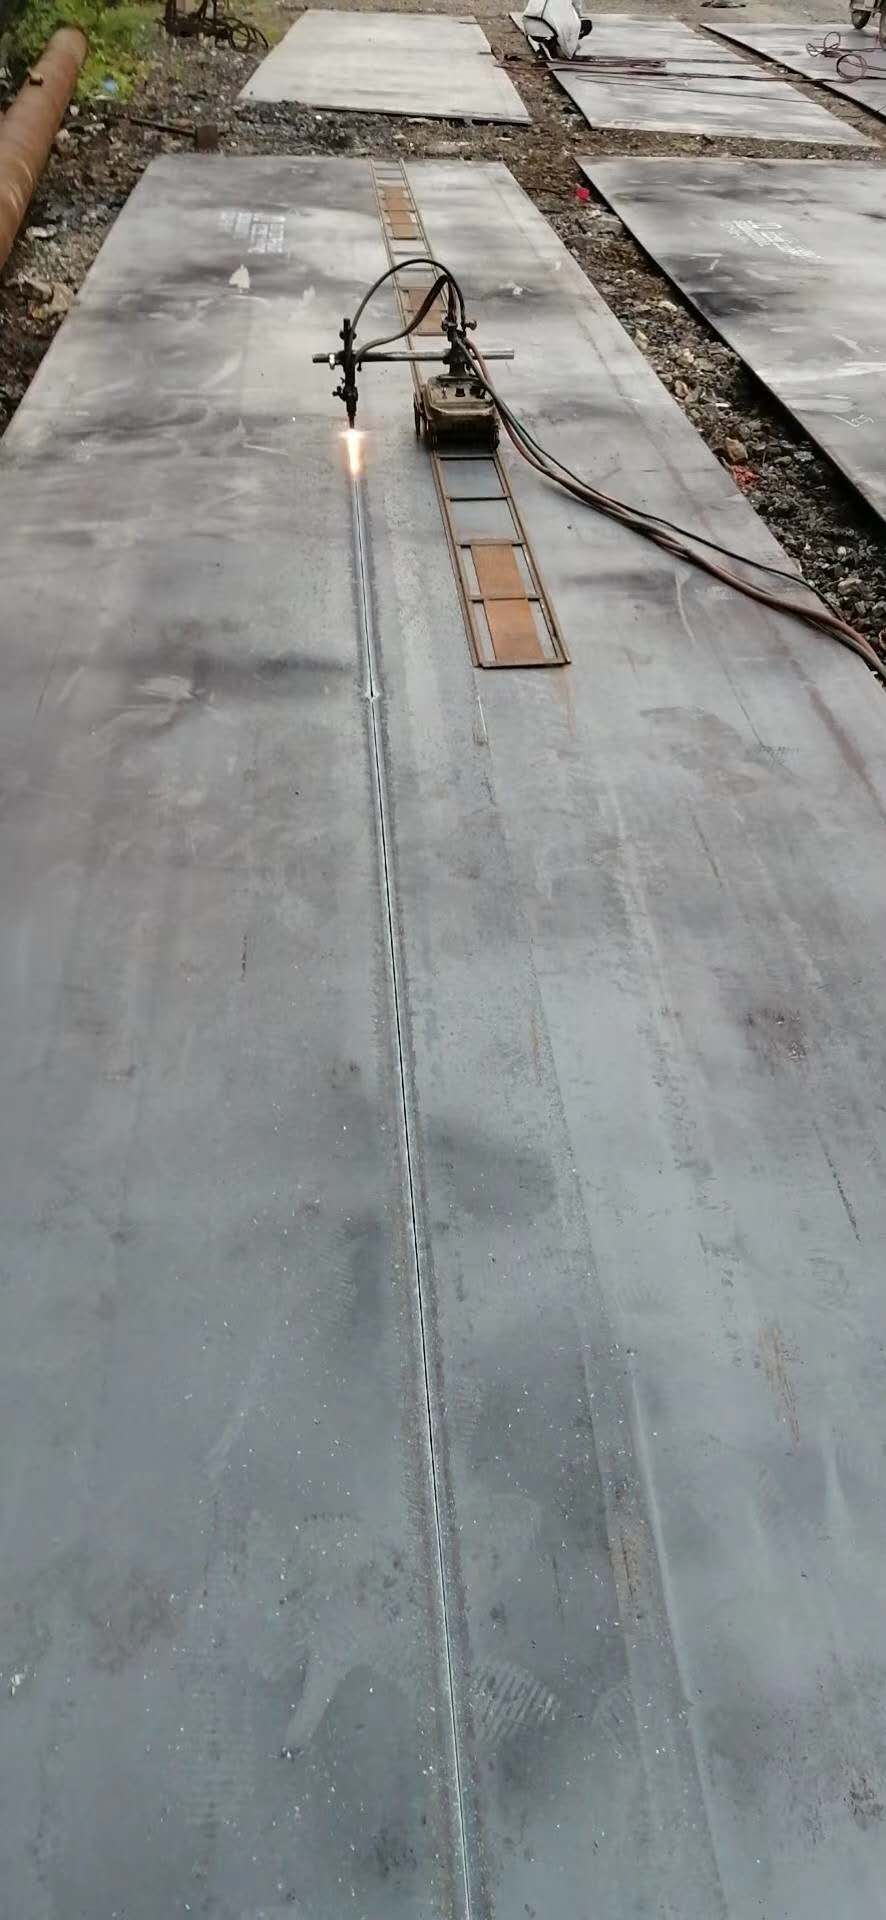 Placa de acero marino Acero de construcción naval laminado en caliente VL EH36